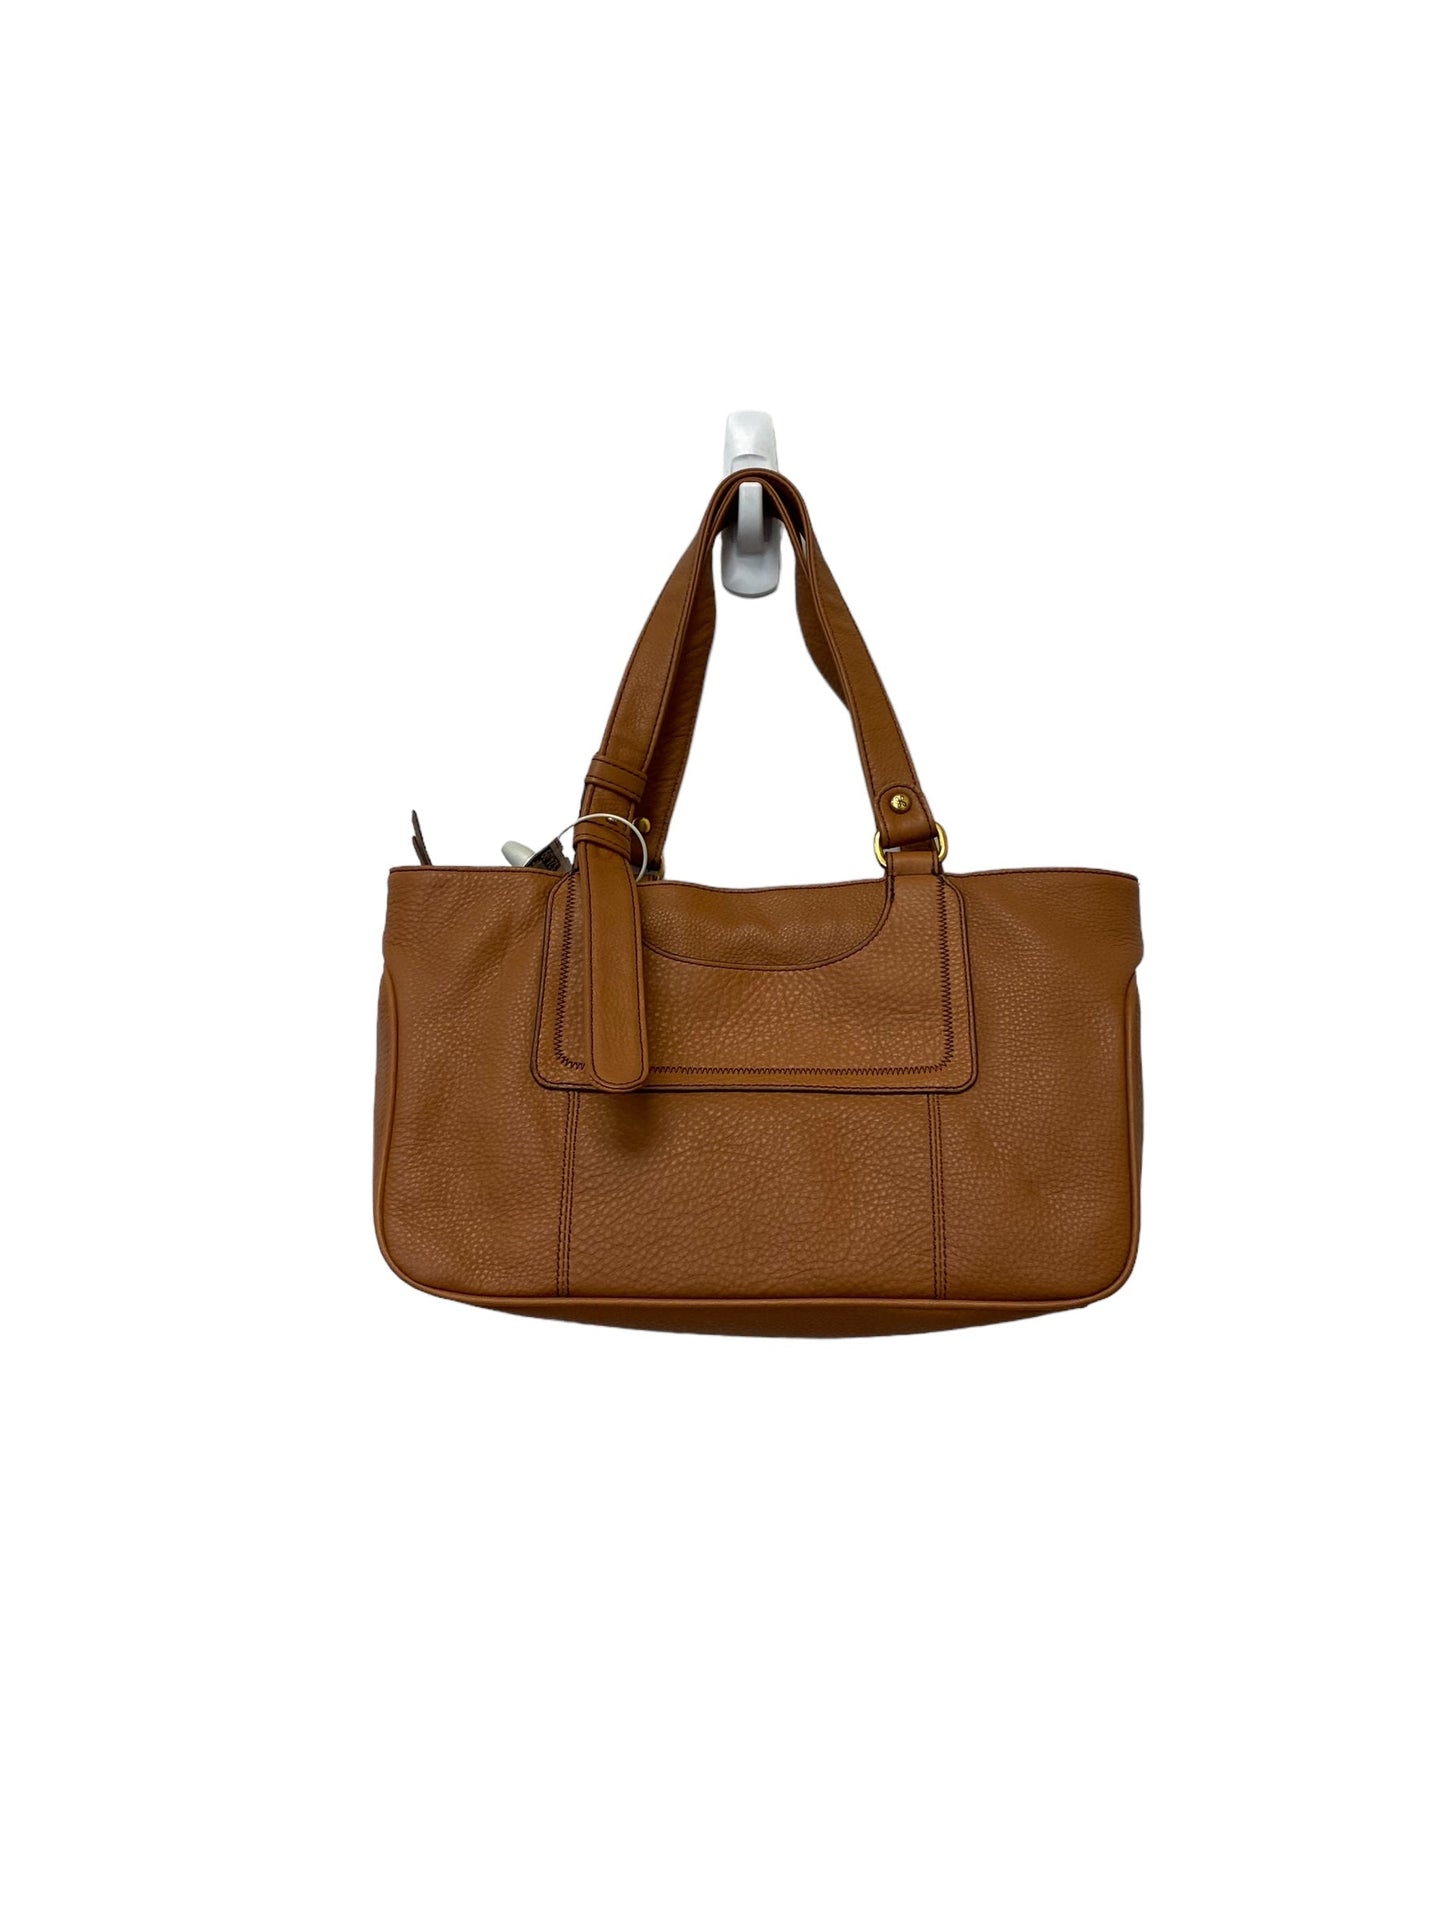 Handbag Hobo Intl, Size Medium